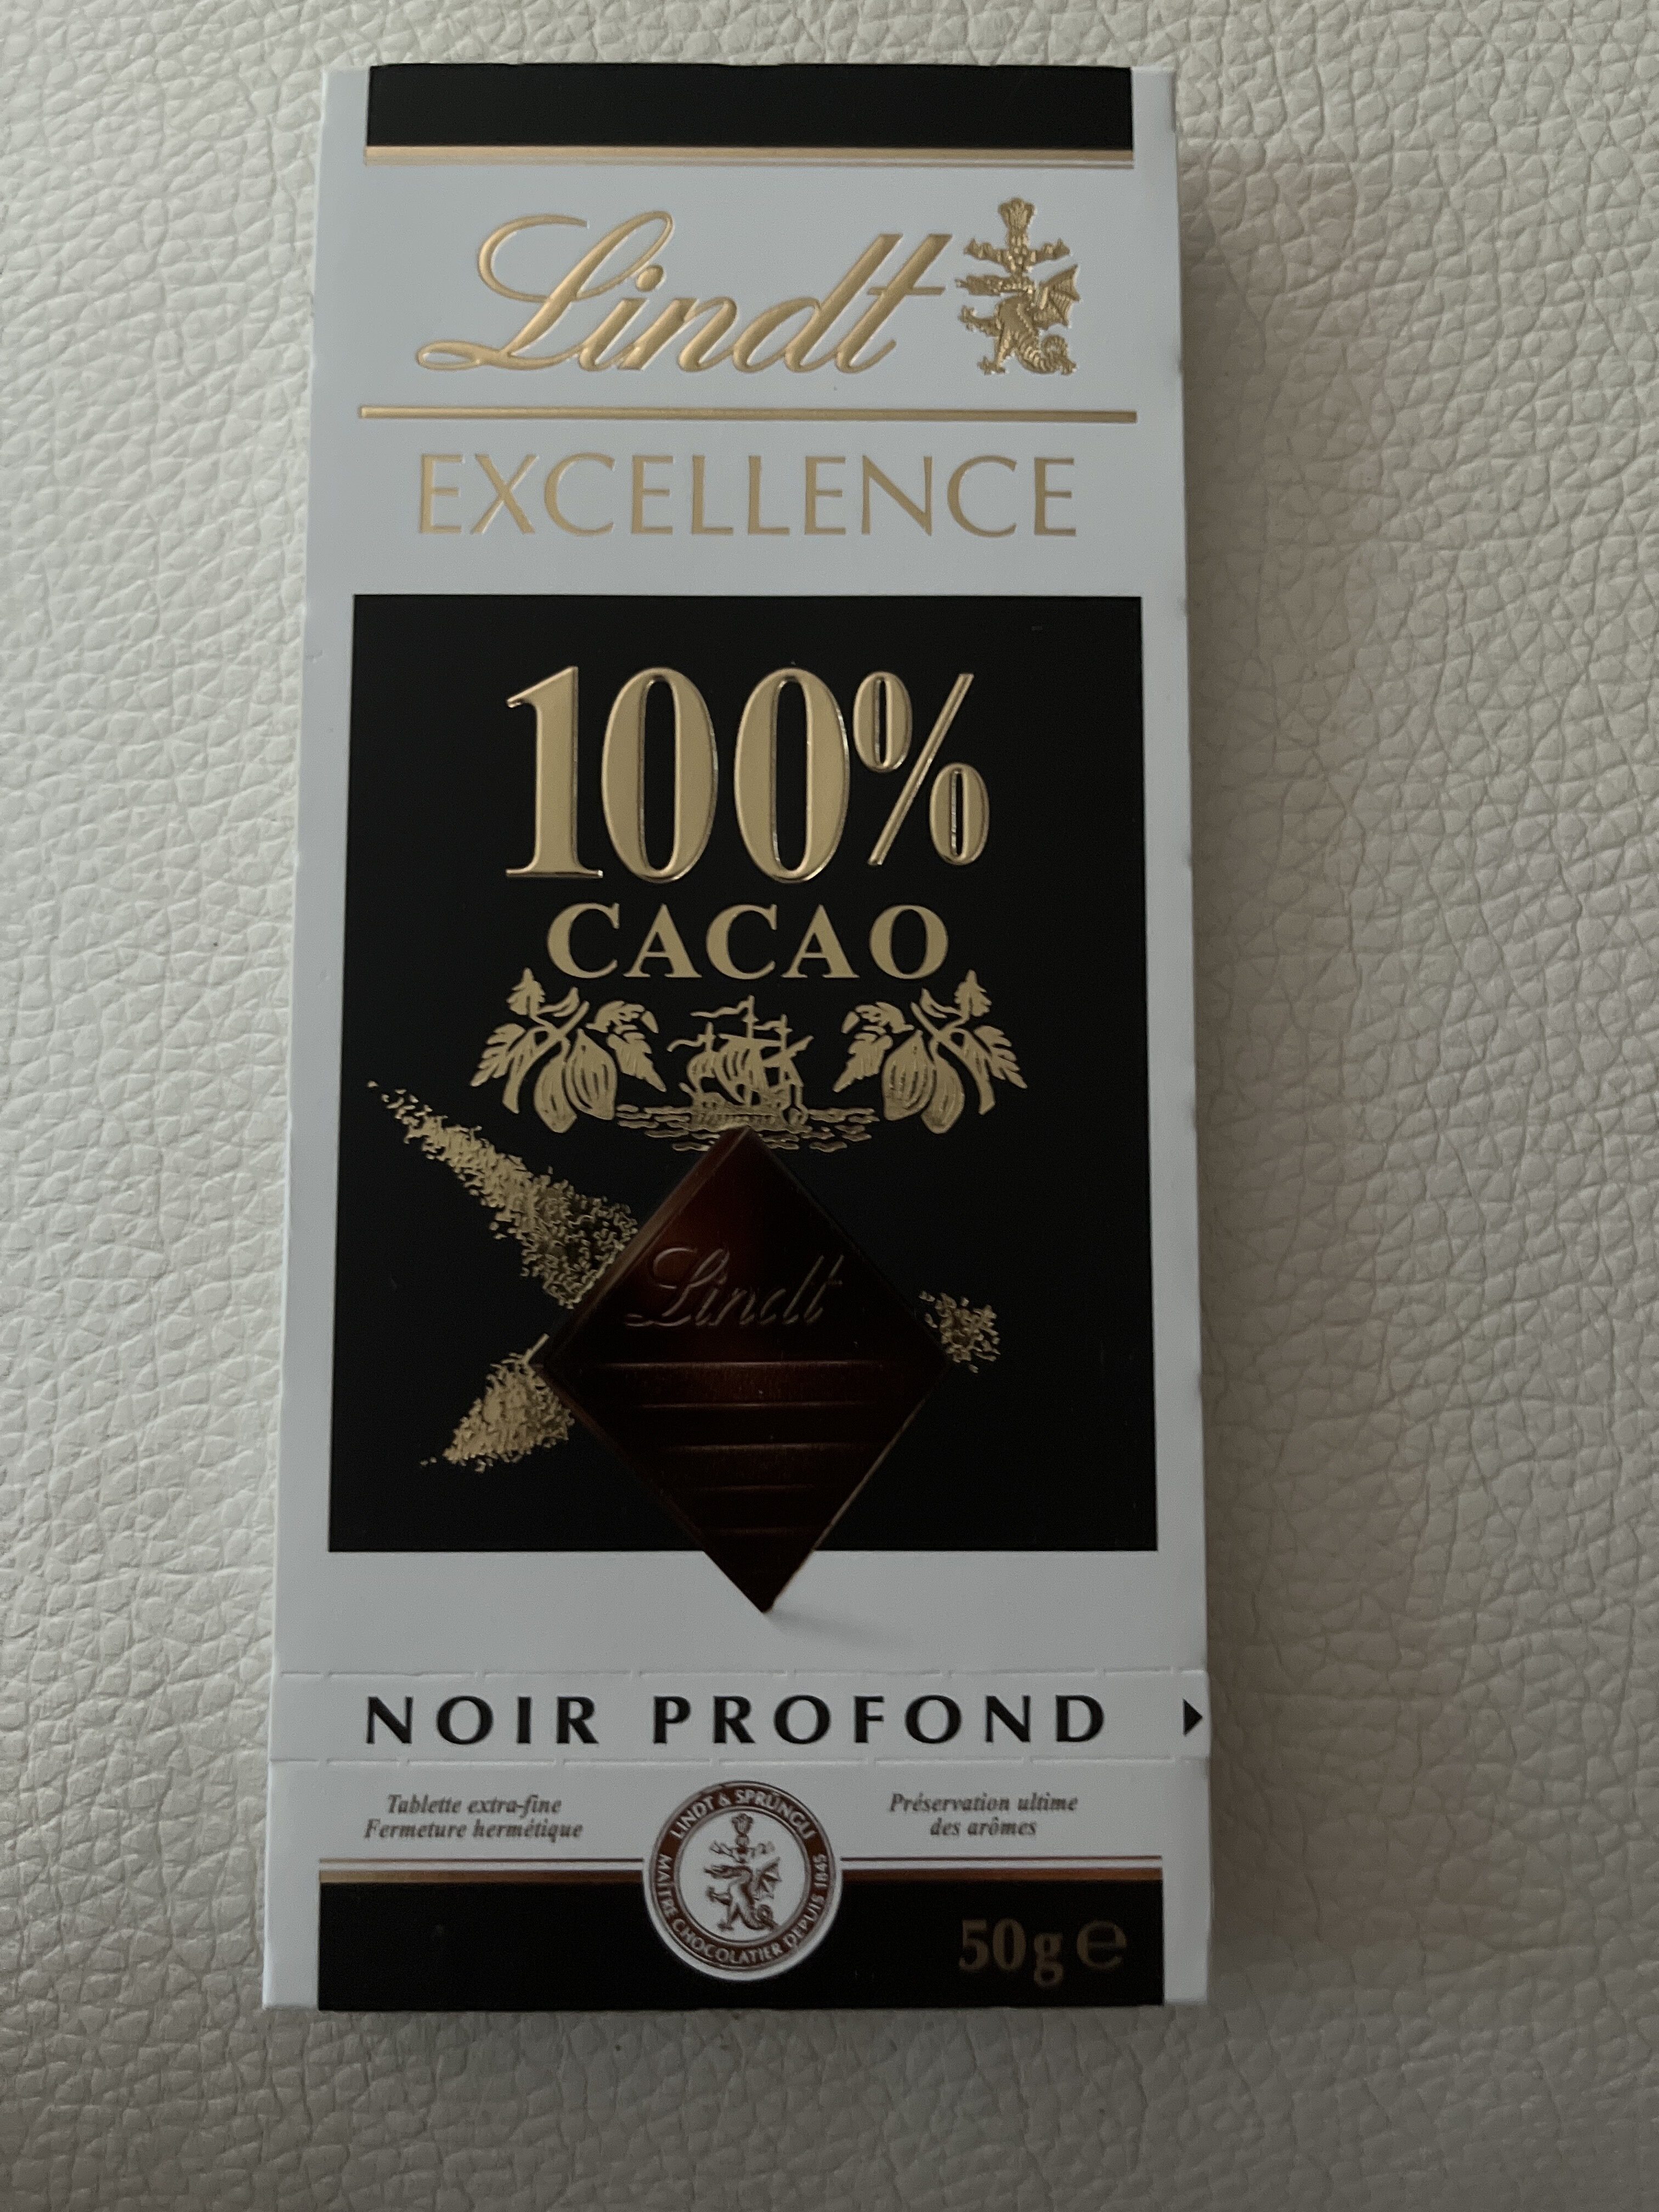 Excellence 100% cacao noir infini - Producte - fr